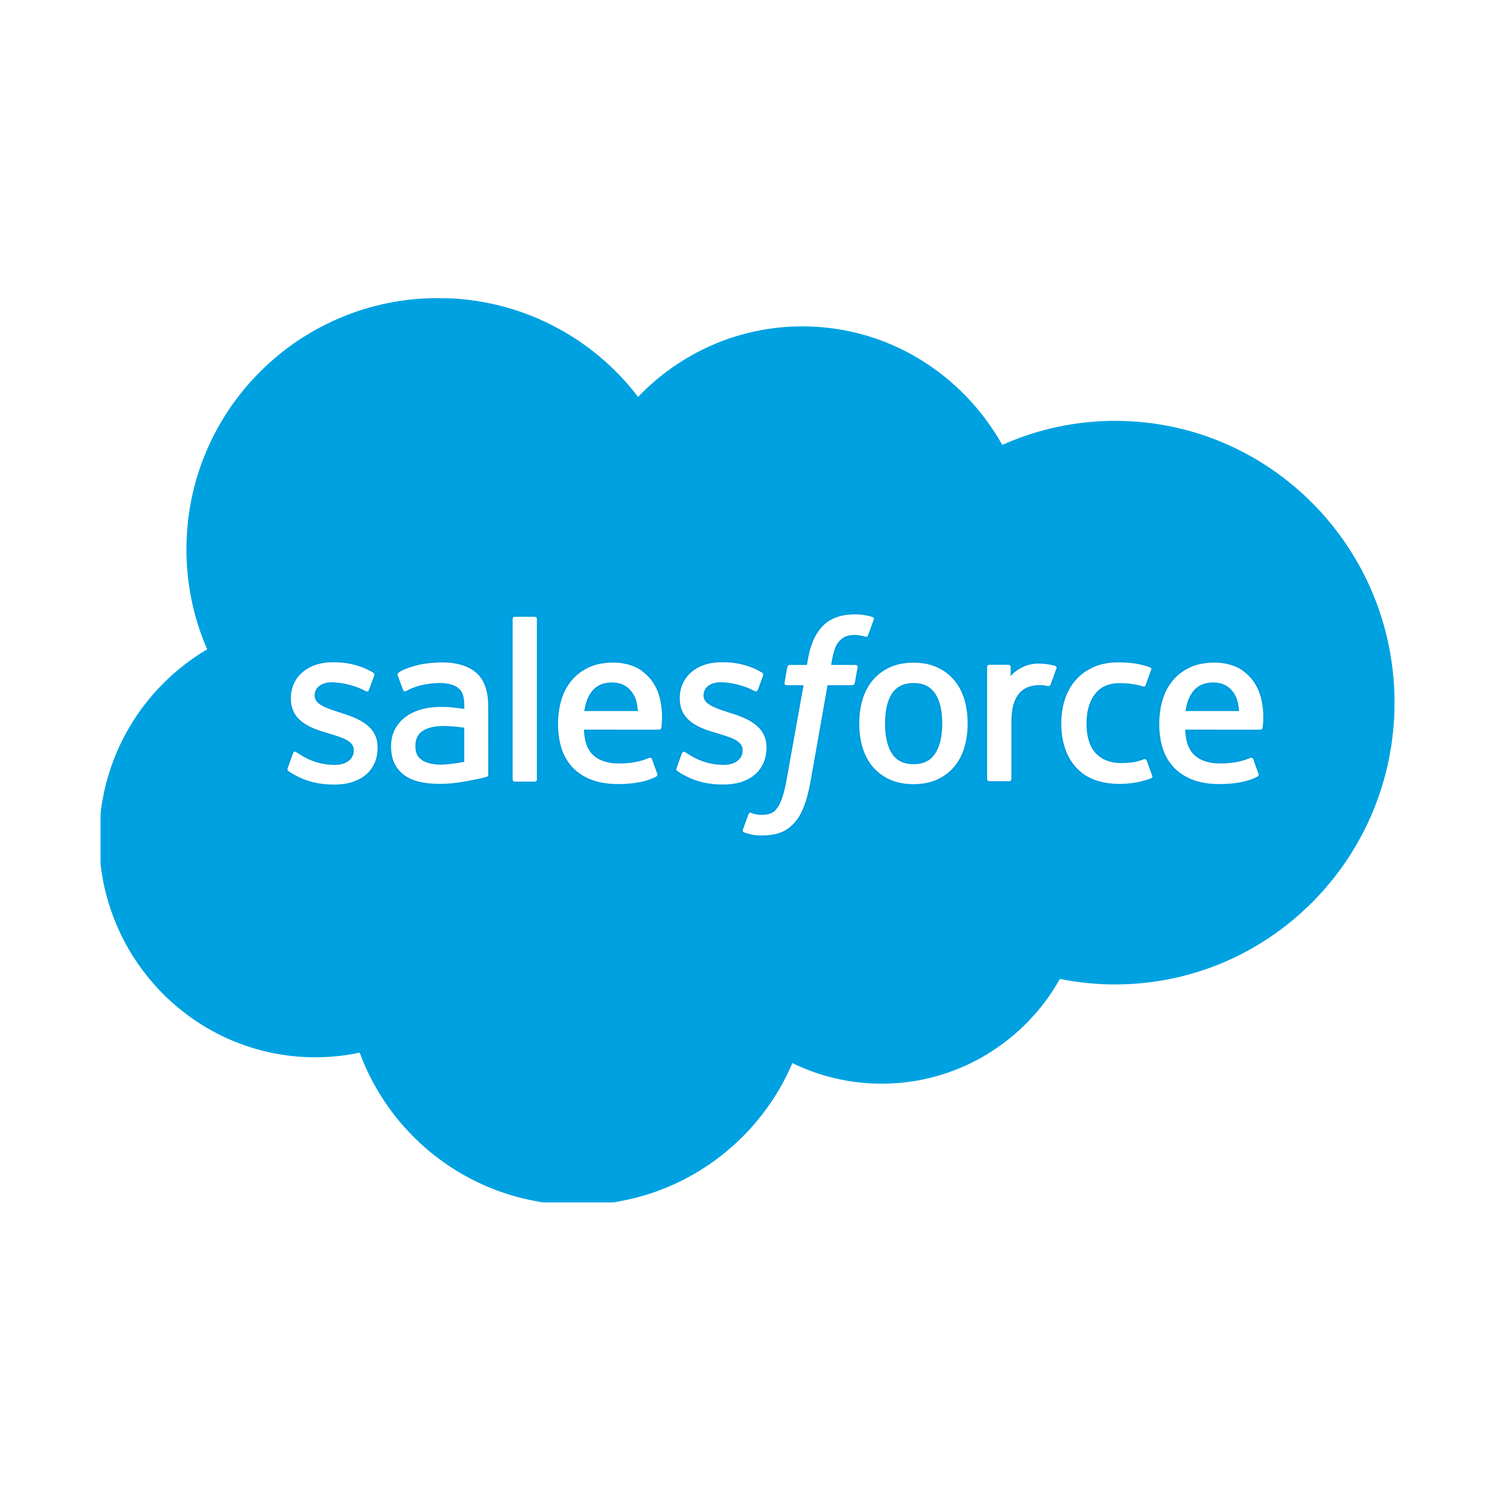 Salesforce, an inriver partner